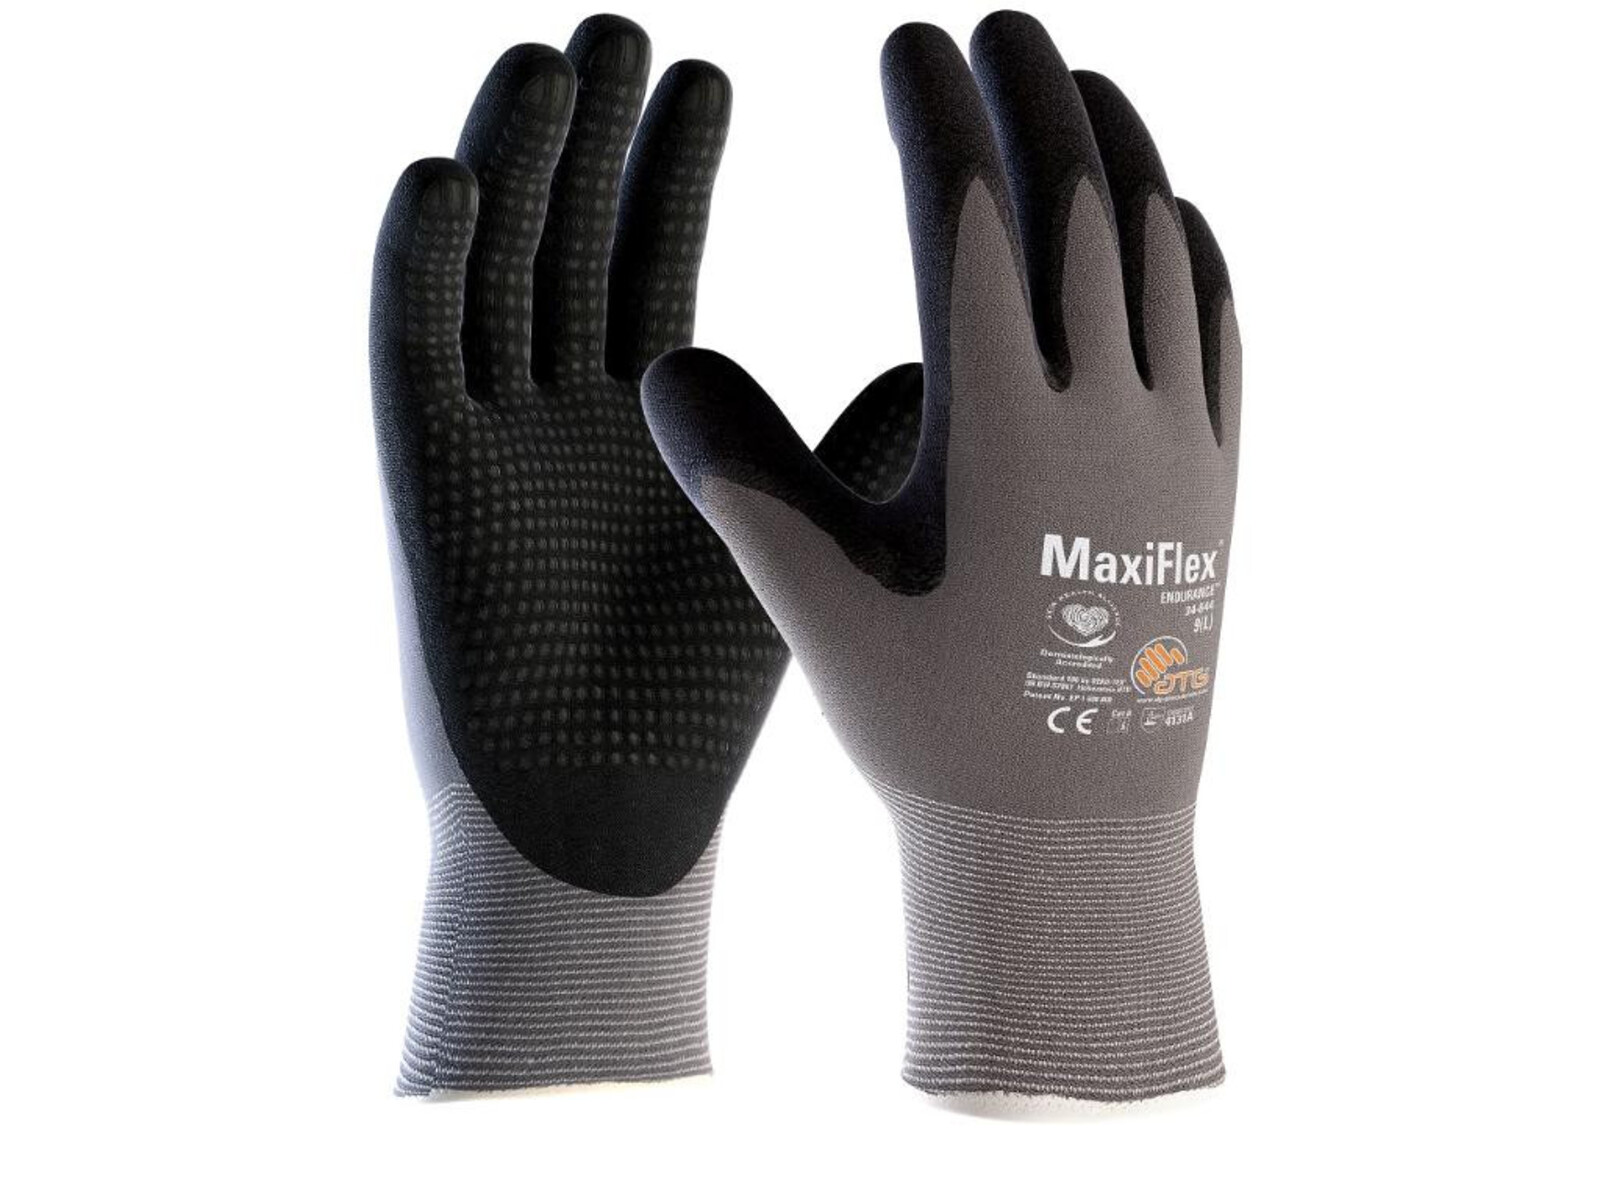 Pracovné povrstvené rukavice ATG MaxiFlex Endurance 34-844 (12 párov) - veľkosť: 8/M, farba: sivá